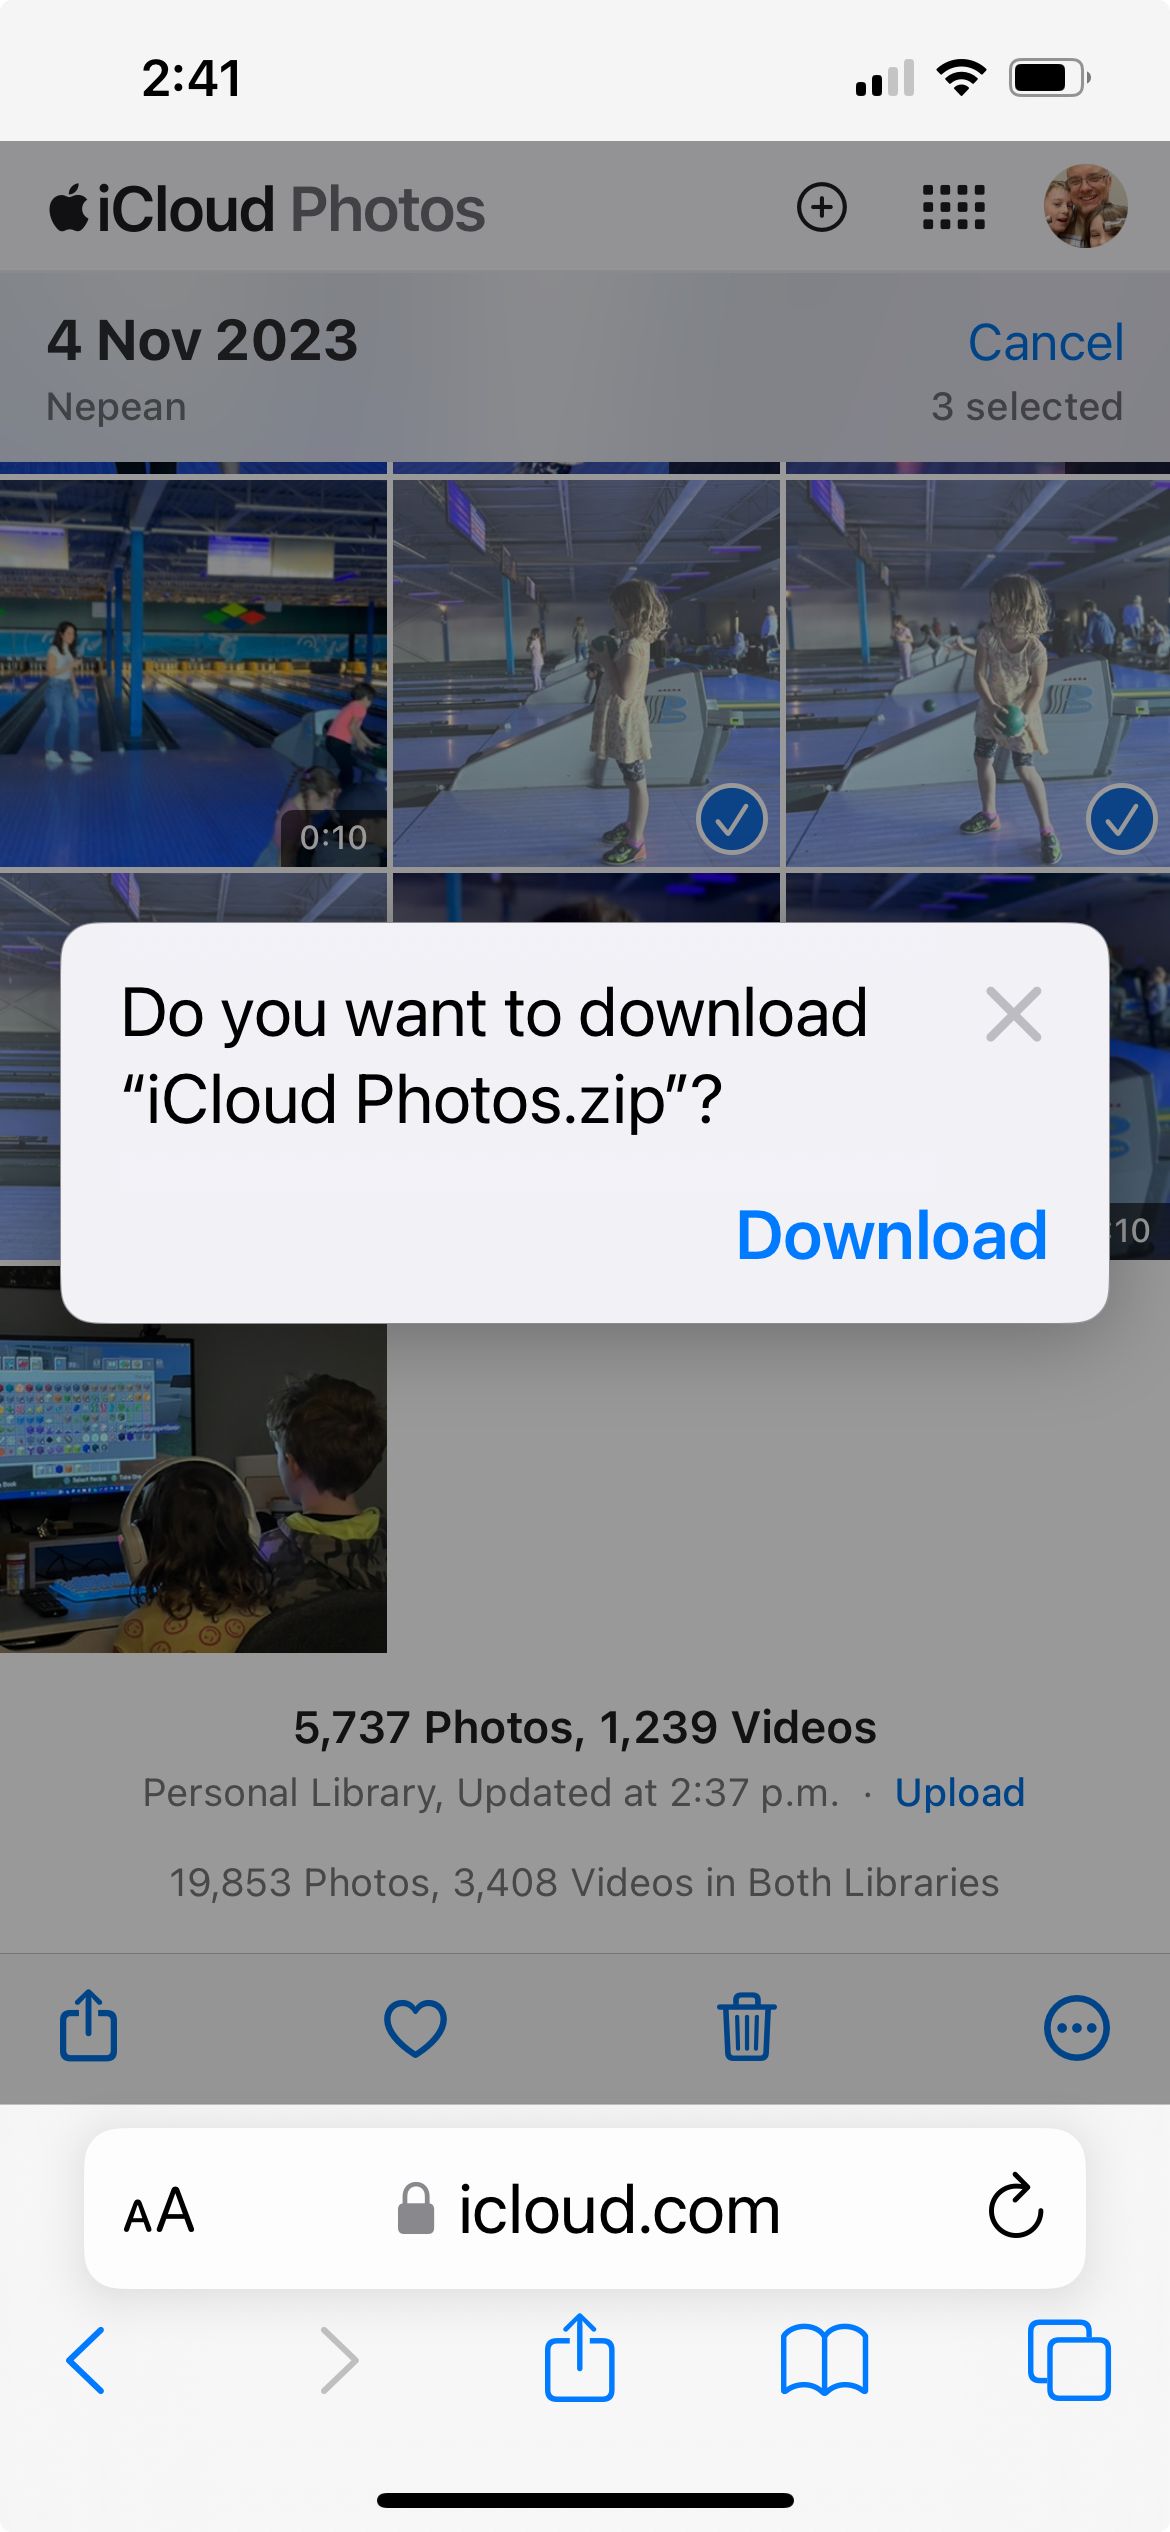 Um pop-up no site iCloud Photos solicitando a confirmação do download de 3 fotos em formato zip.